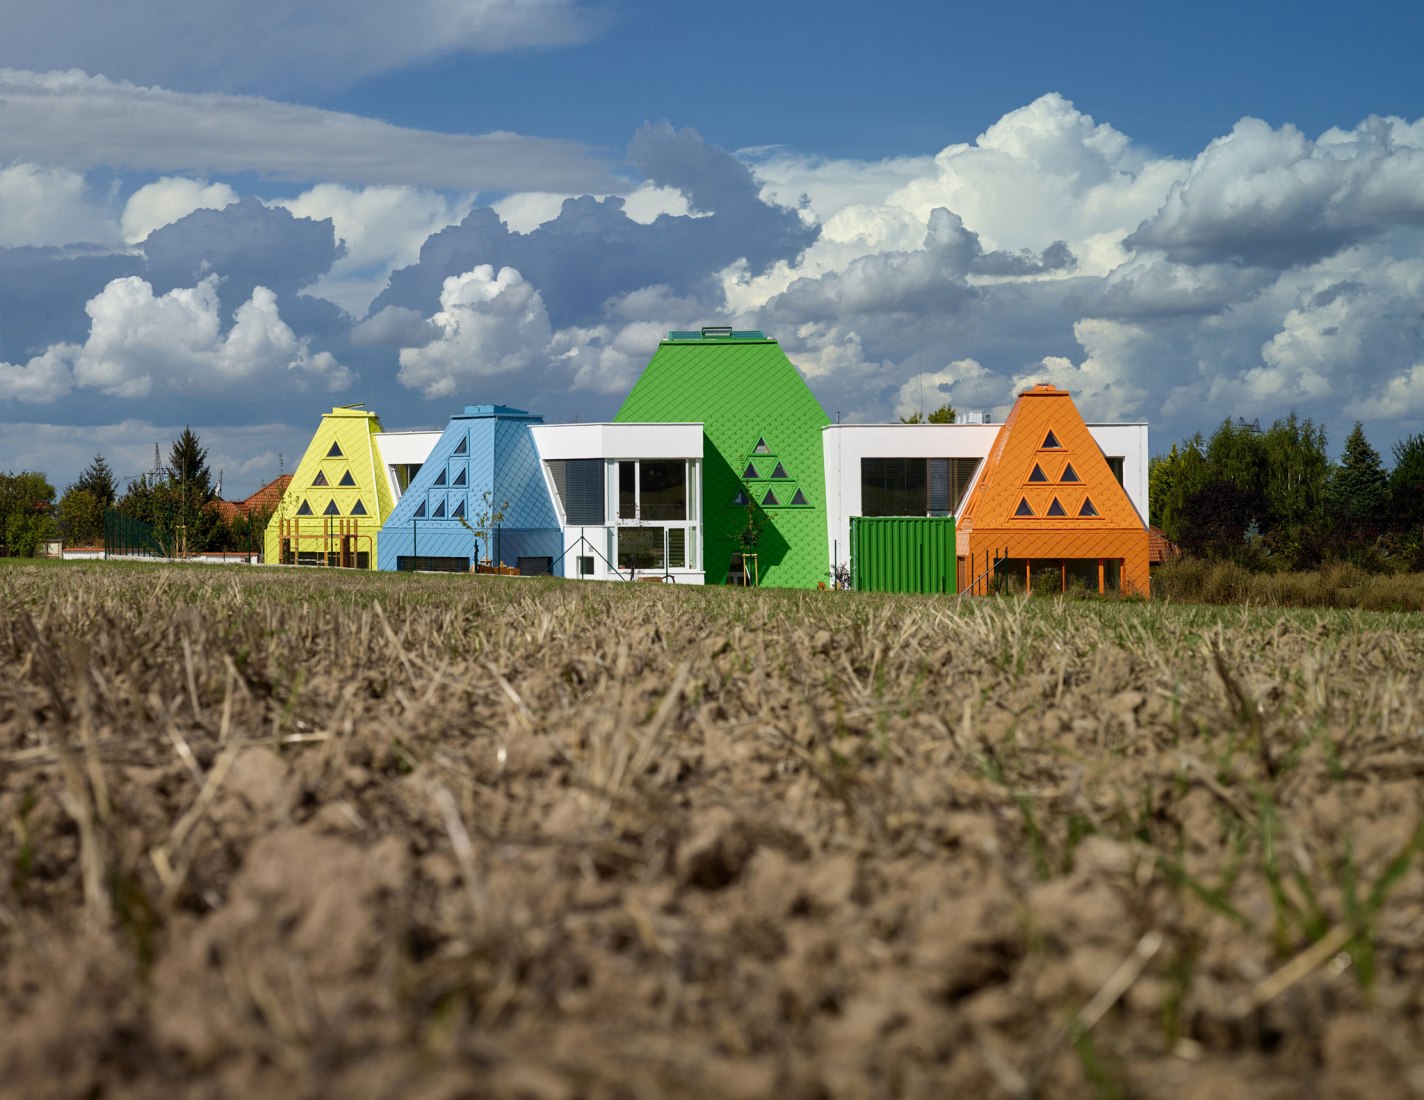 Větrník Kindergarten by Architektura. Photograph by Filip Šlapal.